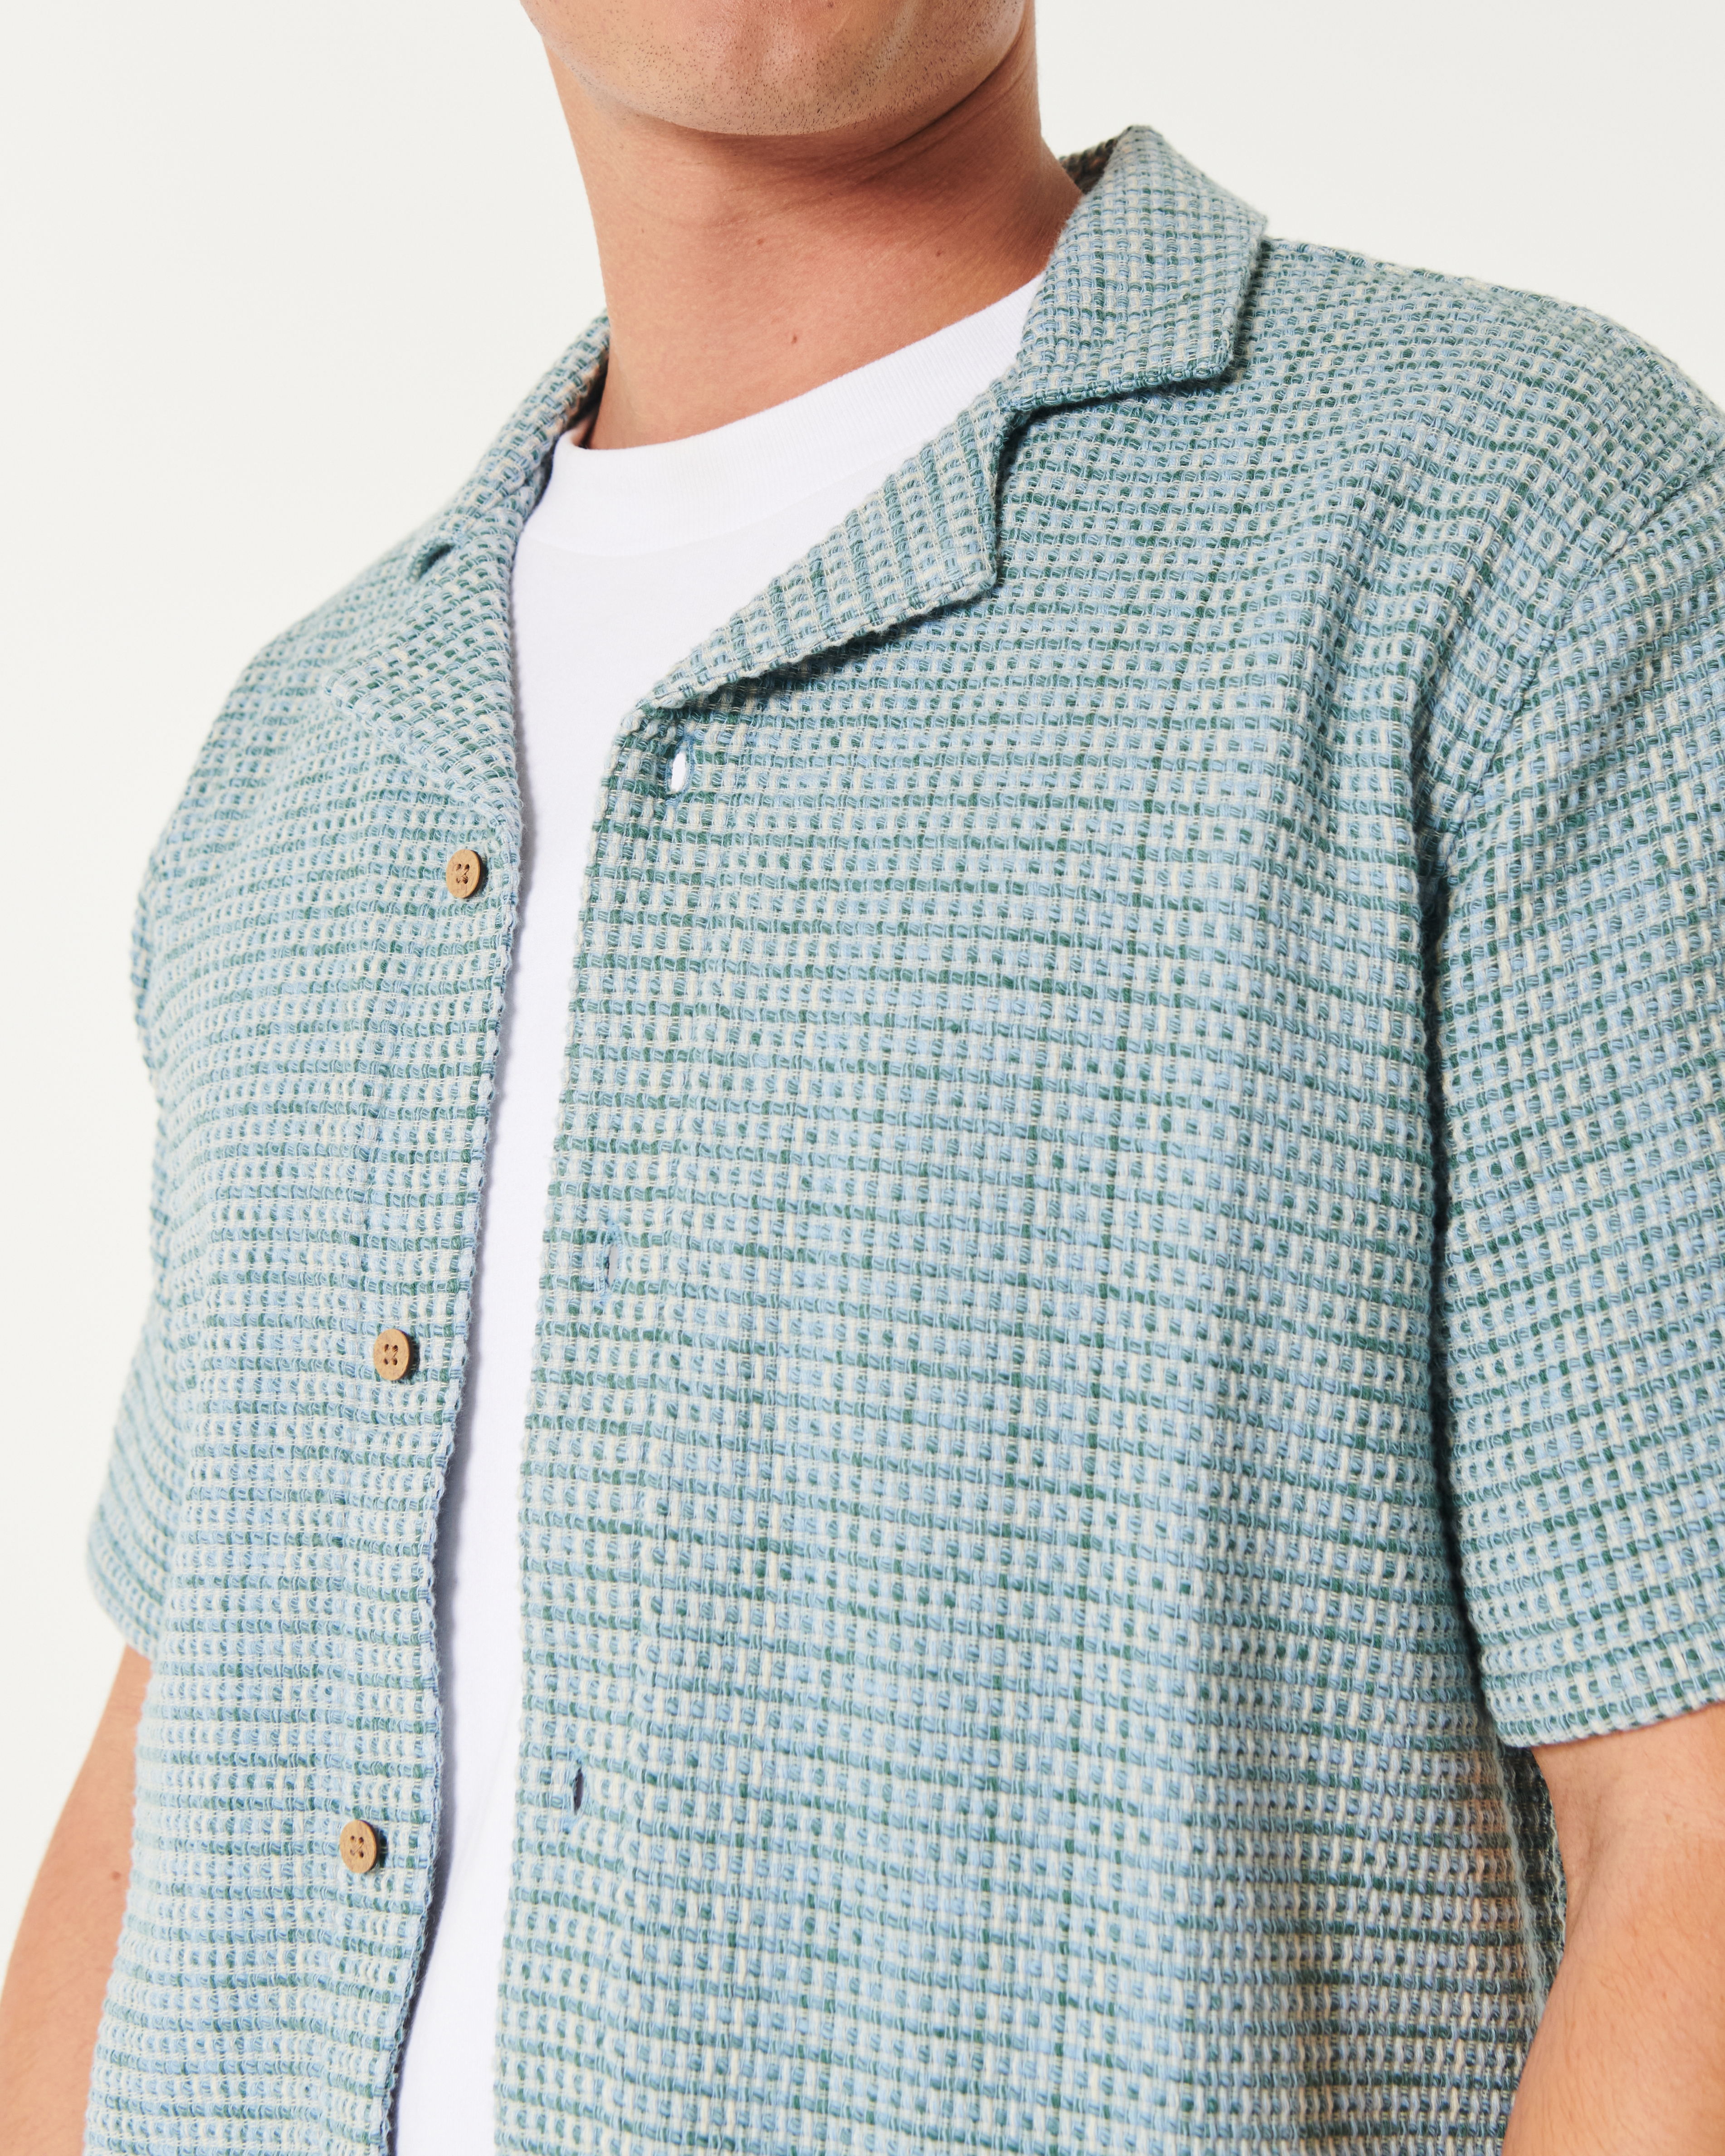 Short-Sleeve Textured Button-Through Shirt